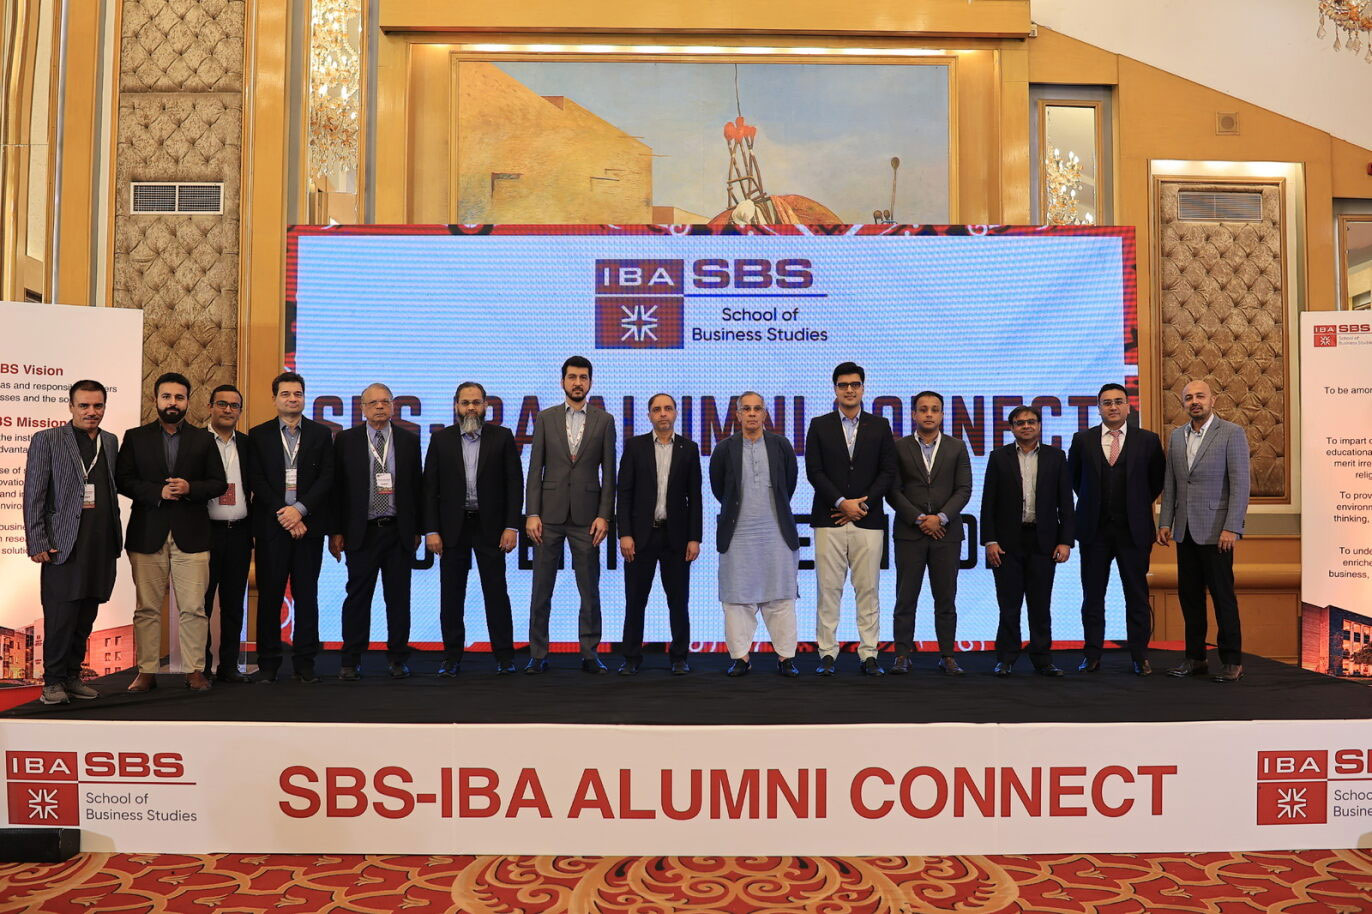 SBS alumni reunite to celebrate their experiences 